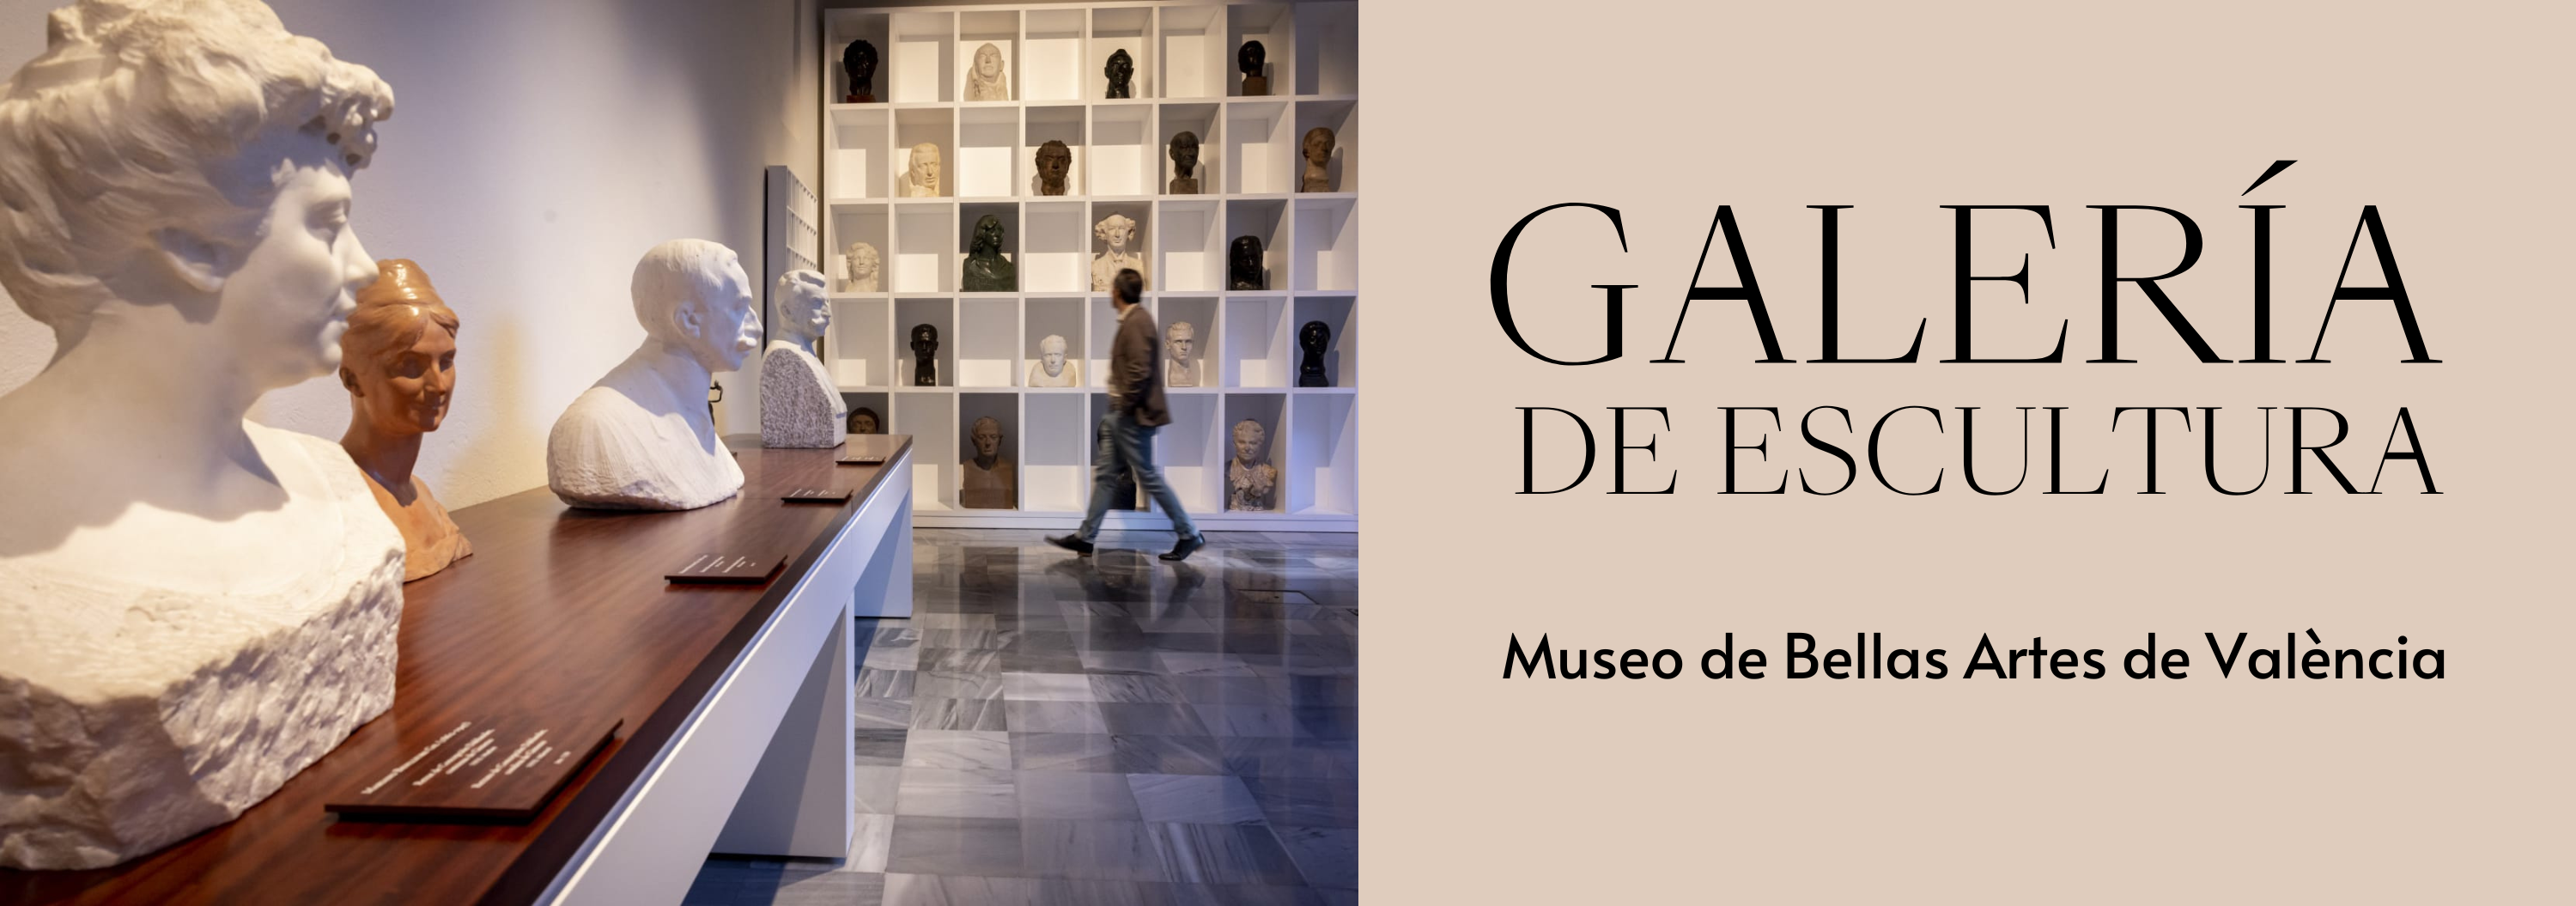 El Museo de Bellas Artes de València abre una nueva Galería de Escultura con motivo del Año Benlliure